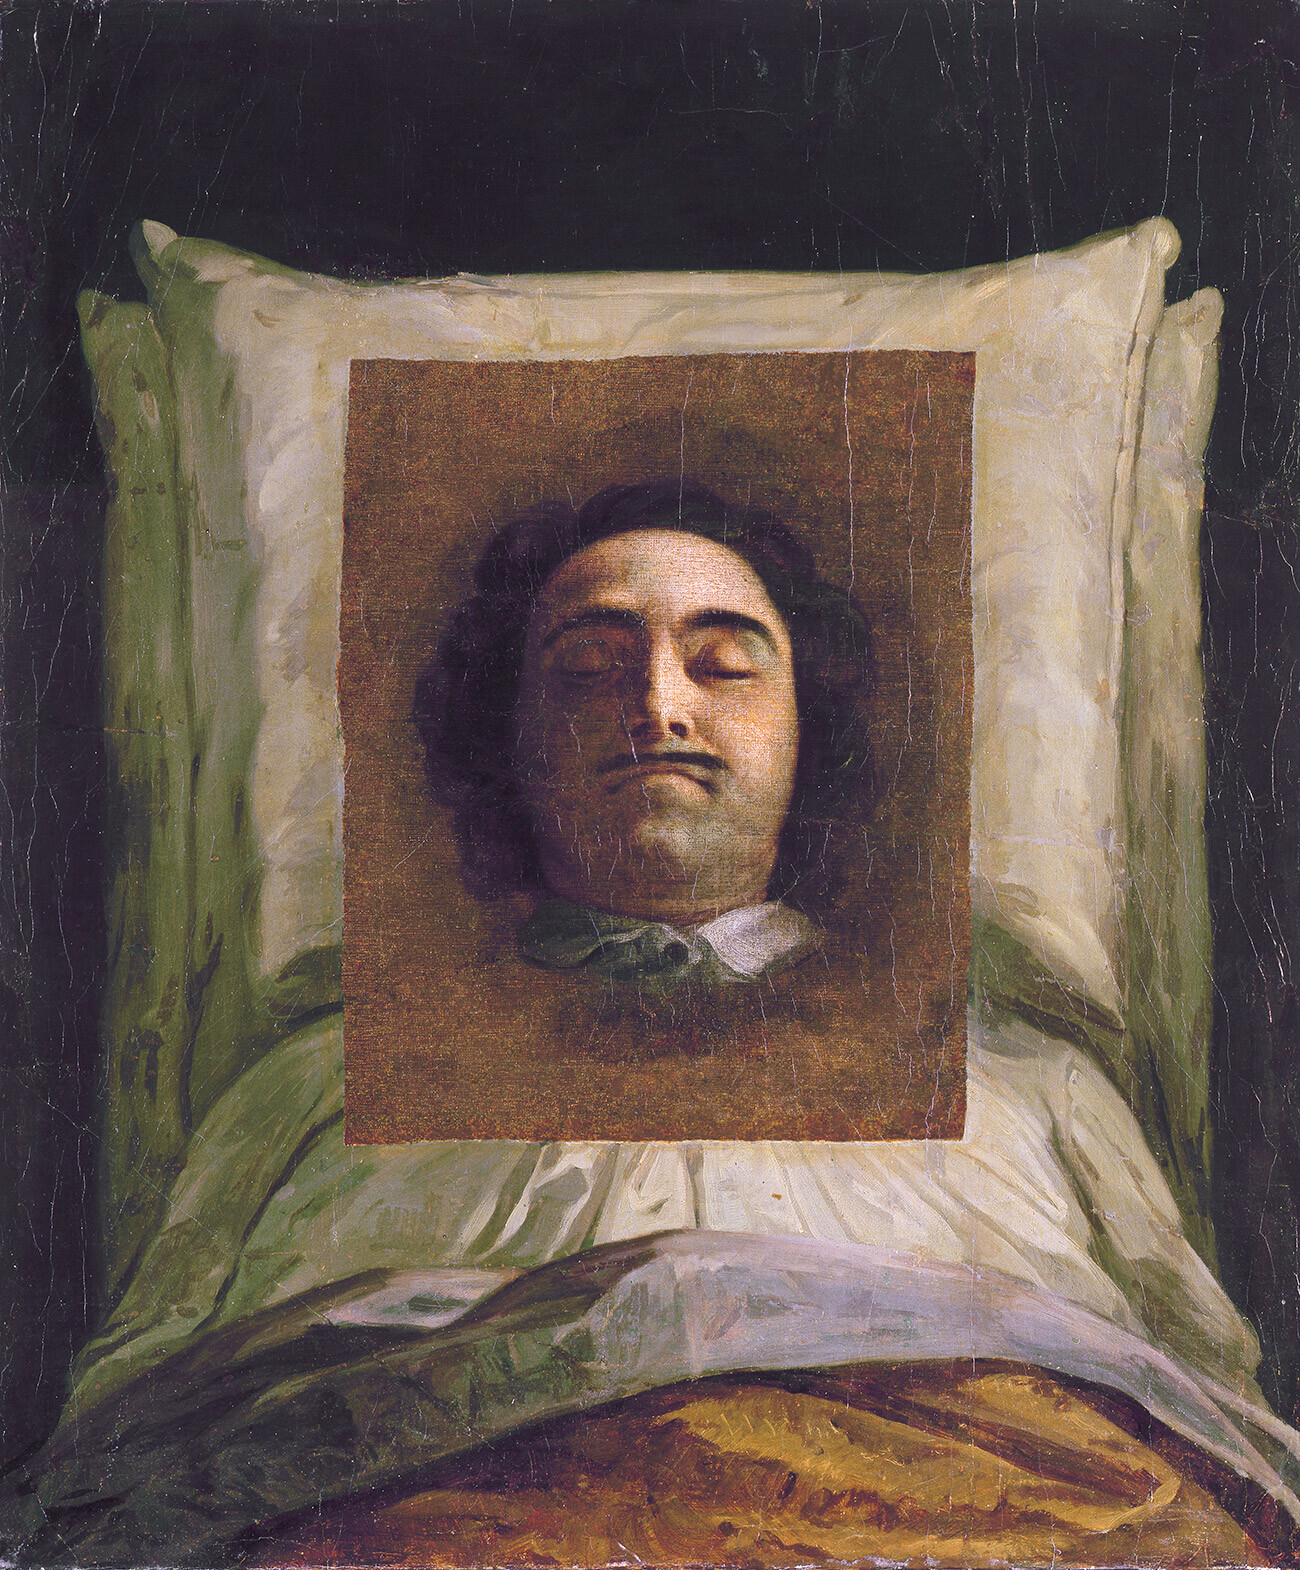 Ritratto di Pietro il Grande sul letto di morte

